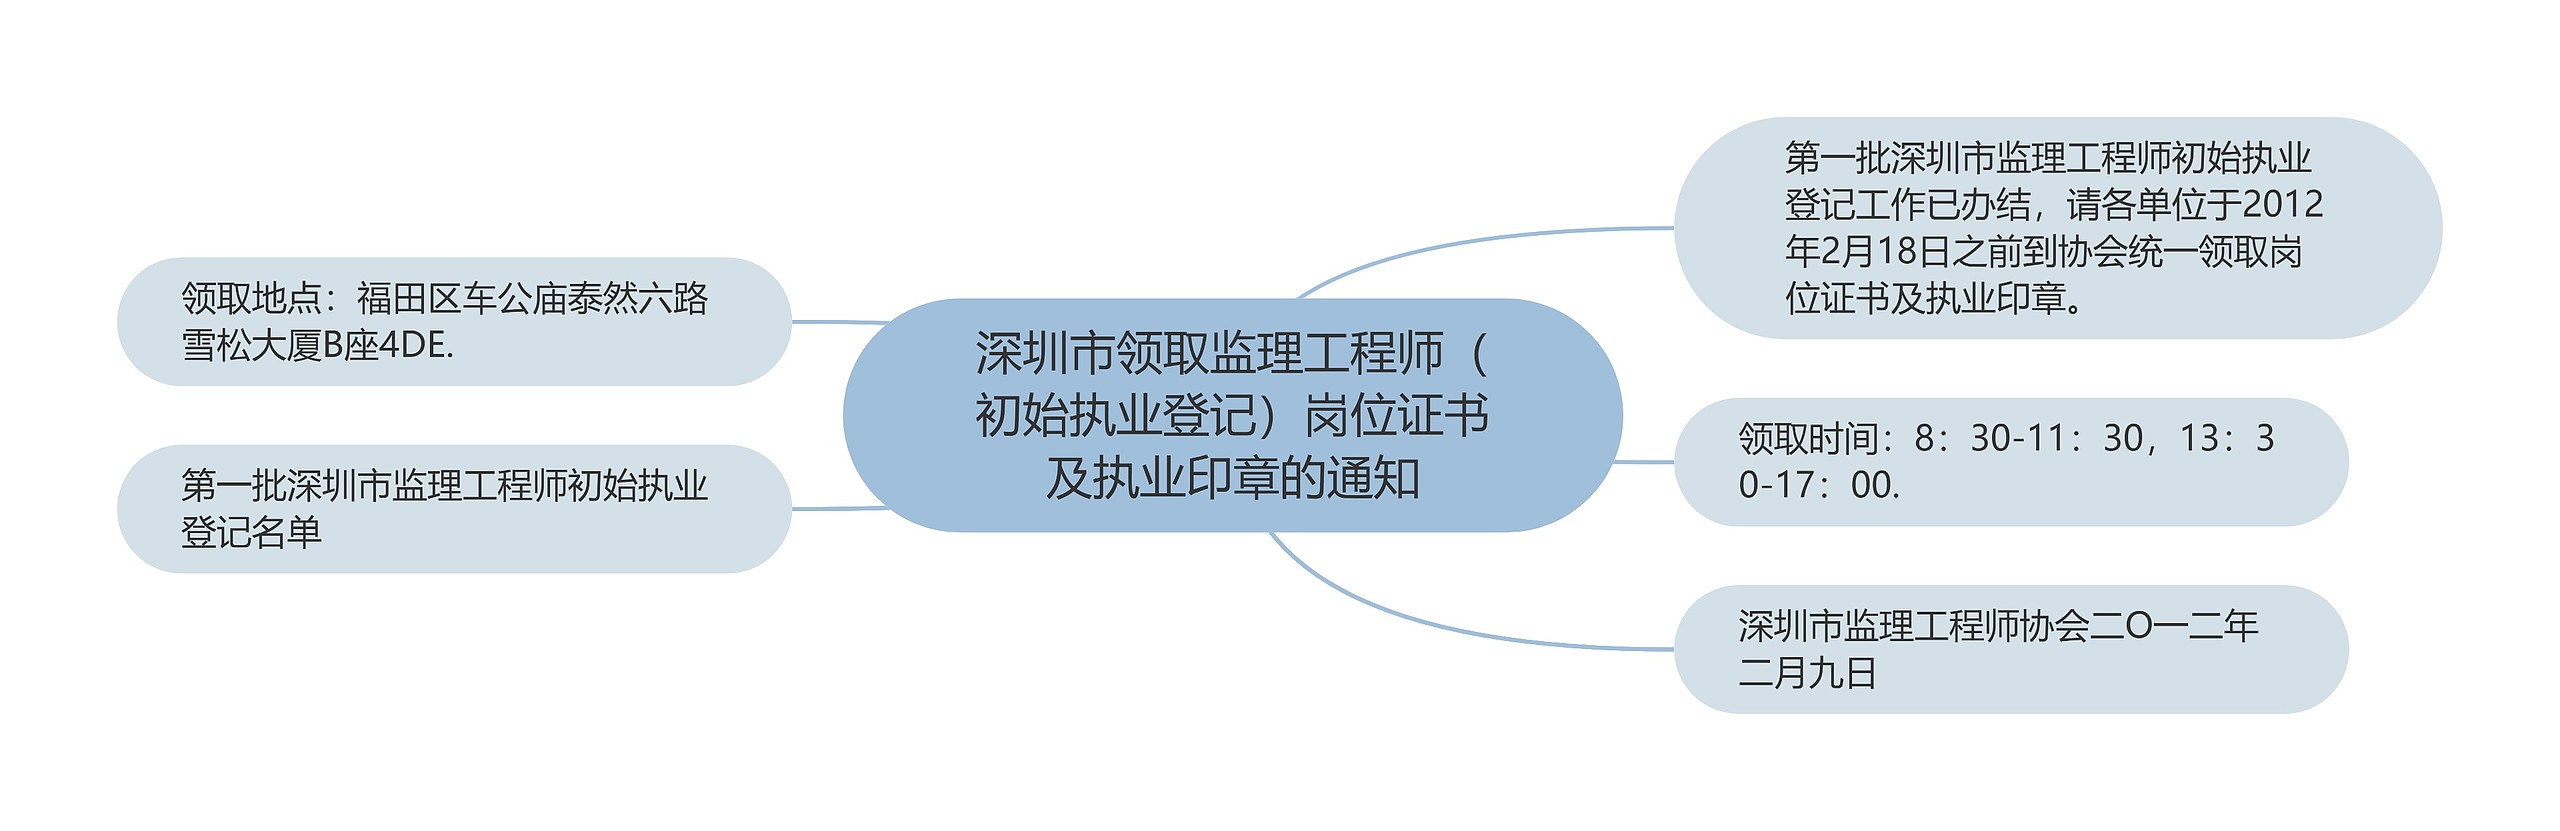 深圳市领取监理工程师（初始执业登记）岗位证书及执业印章的通知思维导图